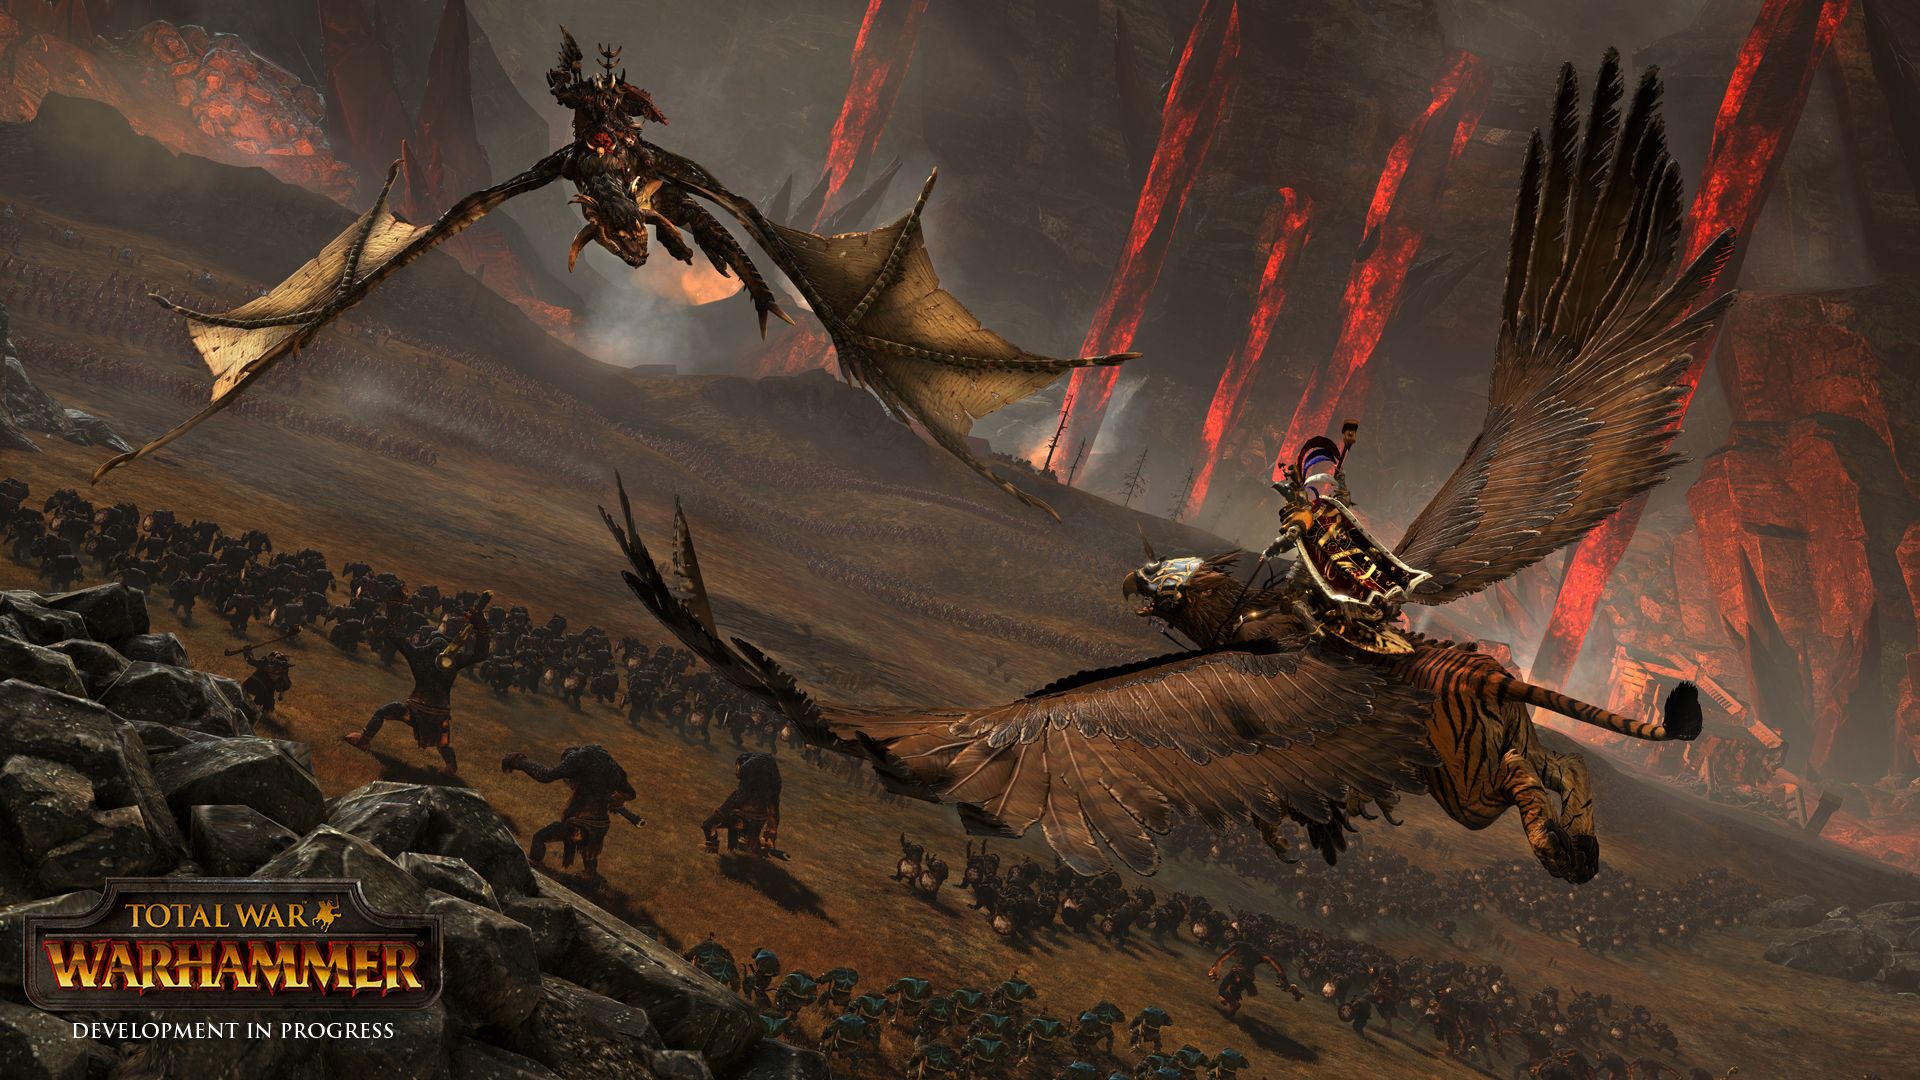 Total War Warhammer screenshots show fantasy battle